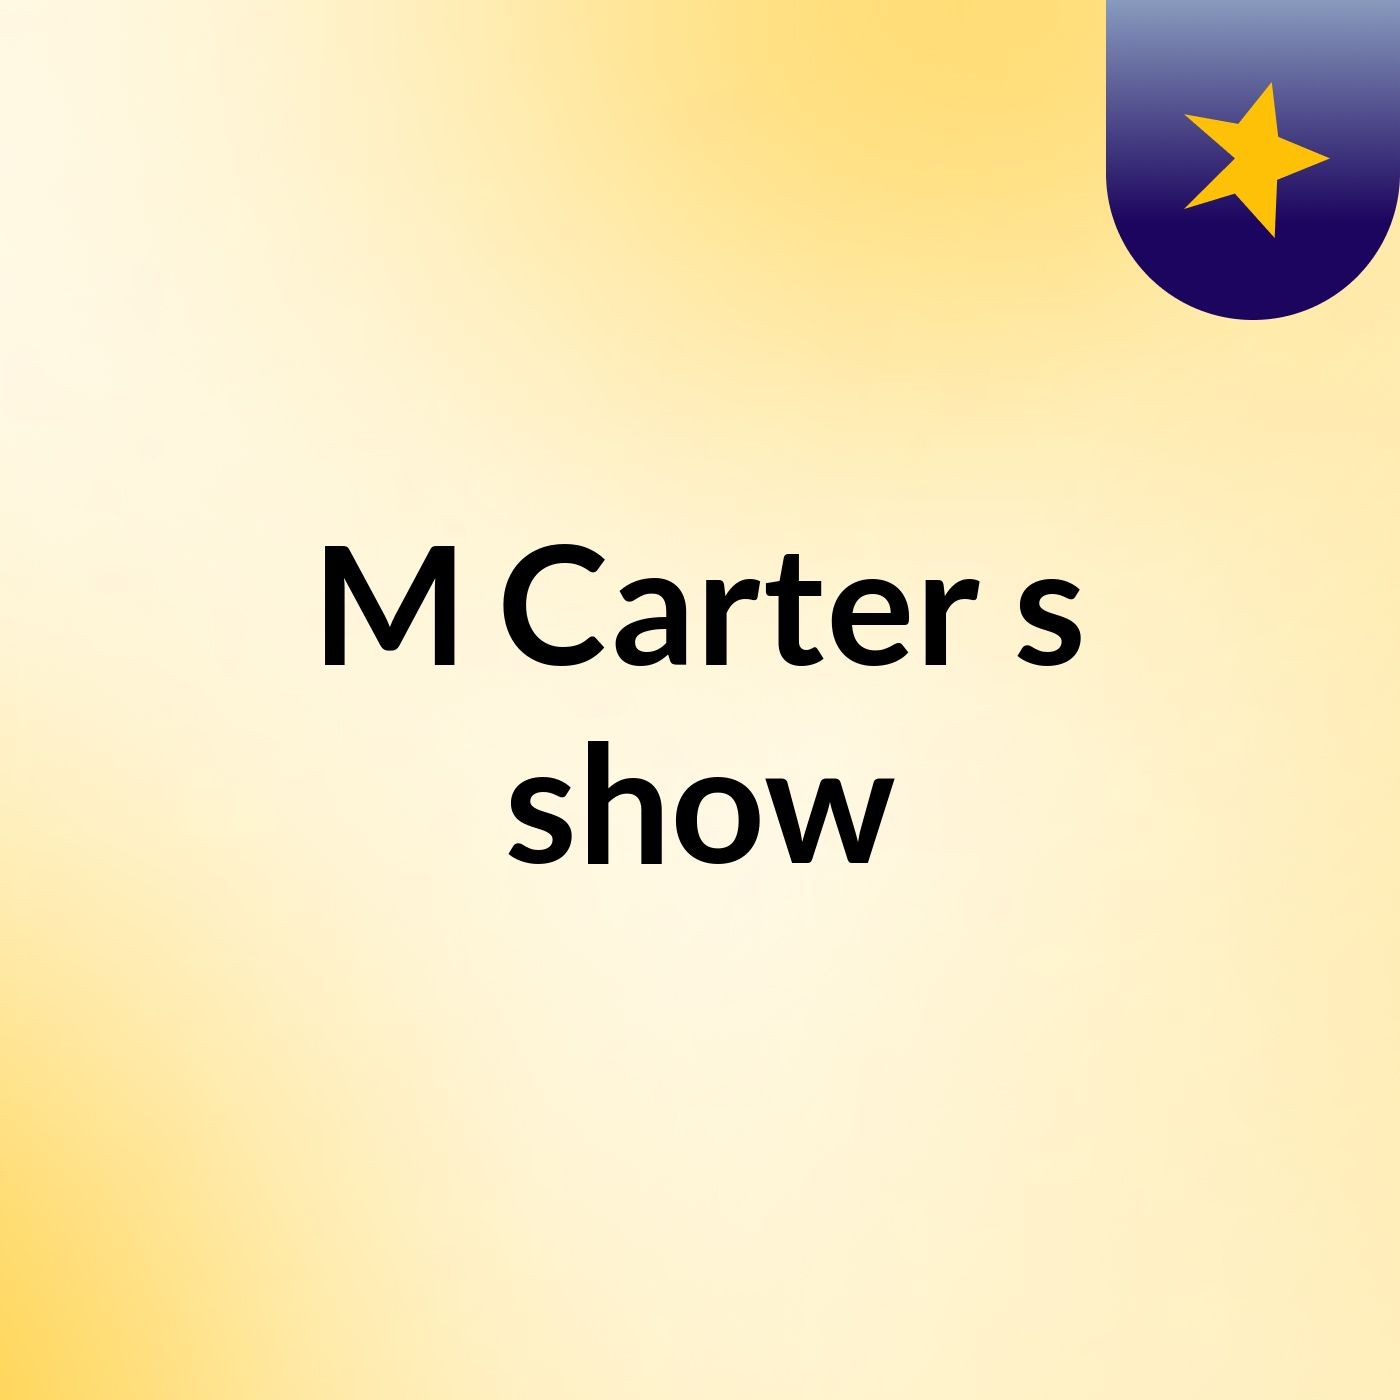 M Carter's show